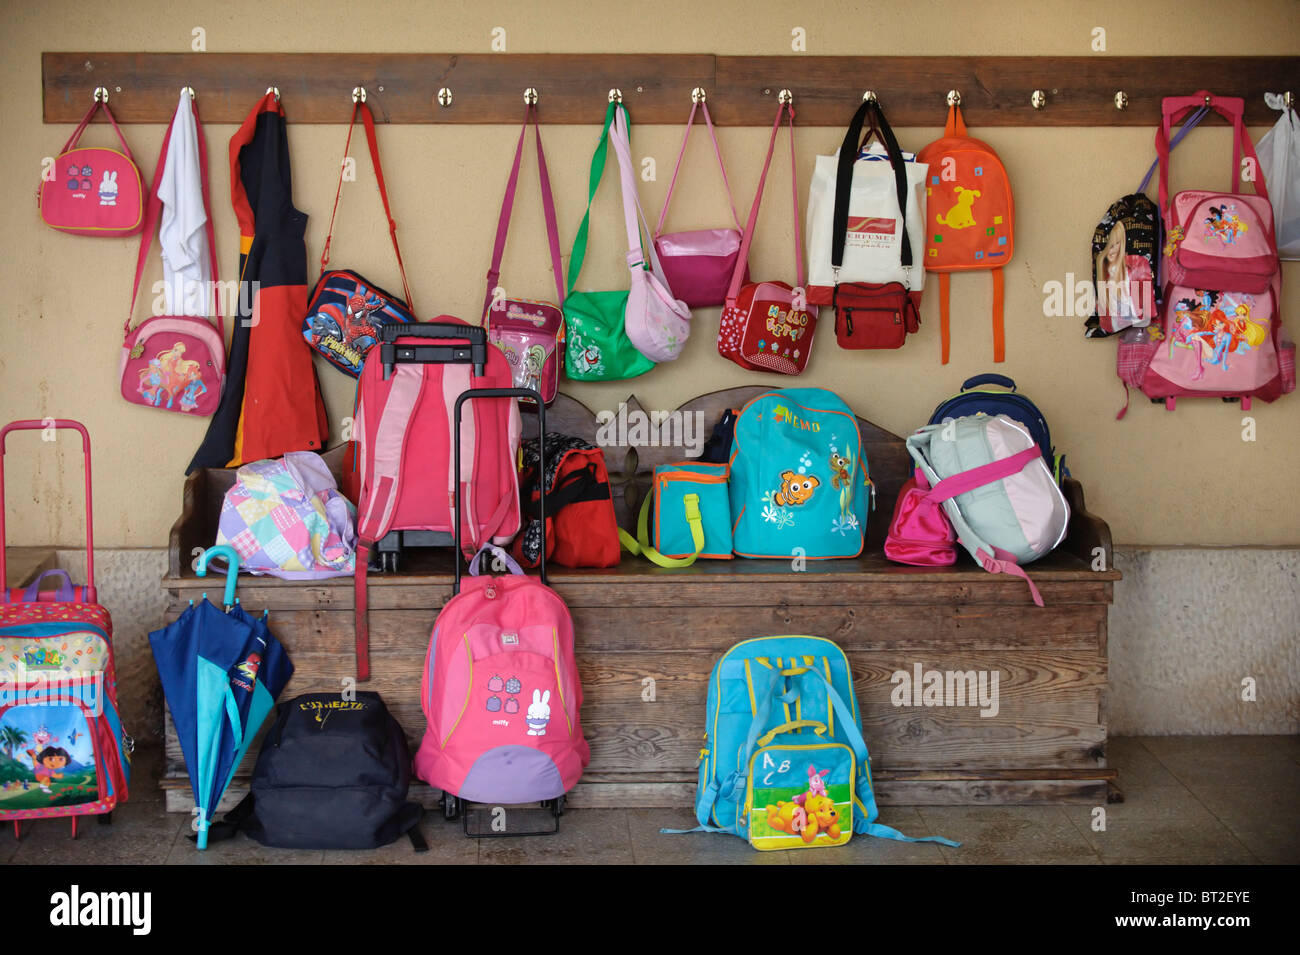 Kinder Taschen und Rucksäcke an Haken hängen und liegen auf dem Boden  außerhalb einer Klasse in einer Grundschule Stockfotografie - Alamy